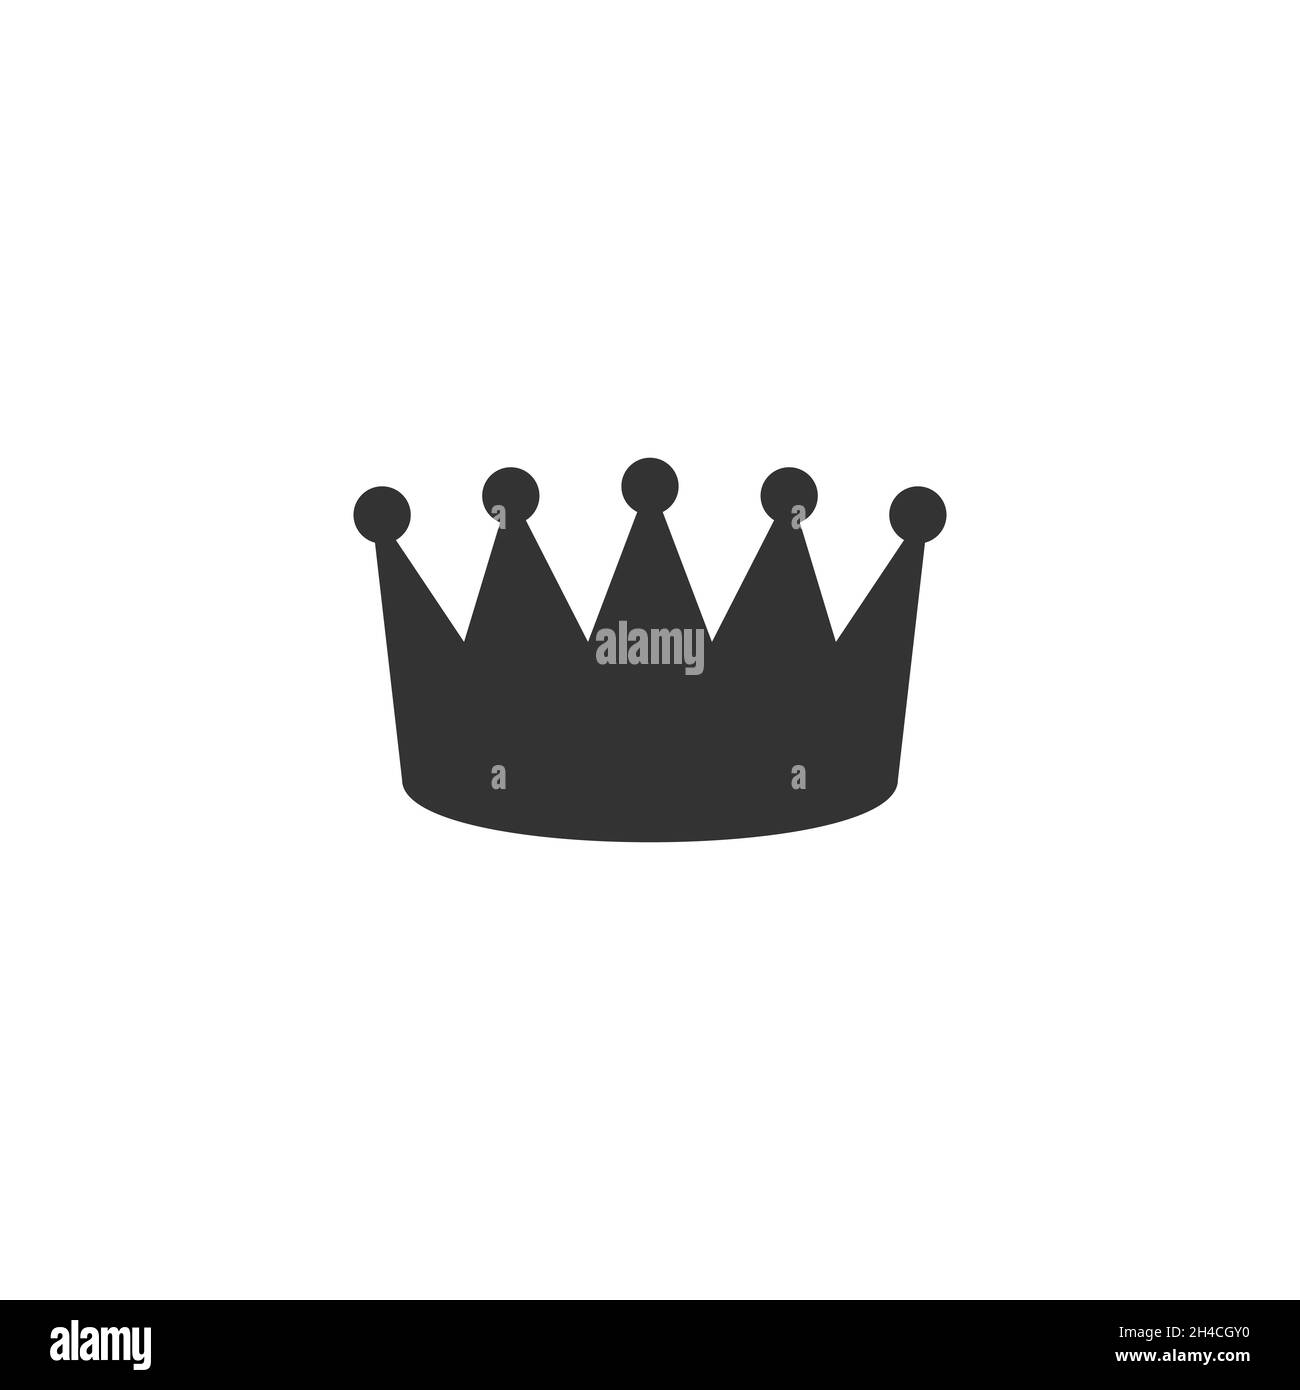 Königin-Krone-Symbol, Luxus-Schild. Stock Vektorgrafik isoliert auf weißem Hintergrund. Stock Vektor